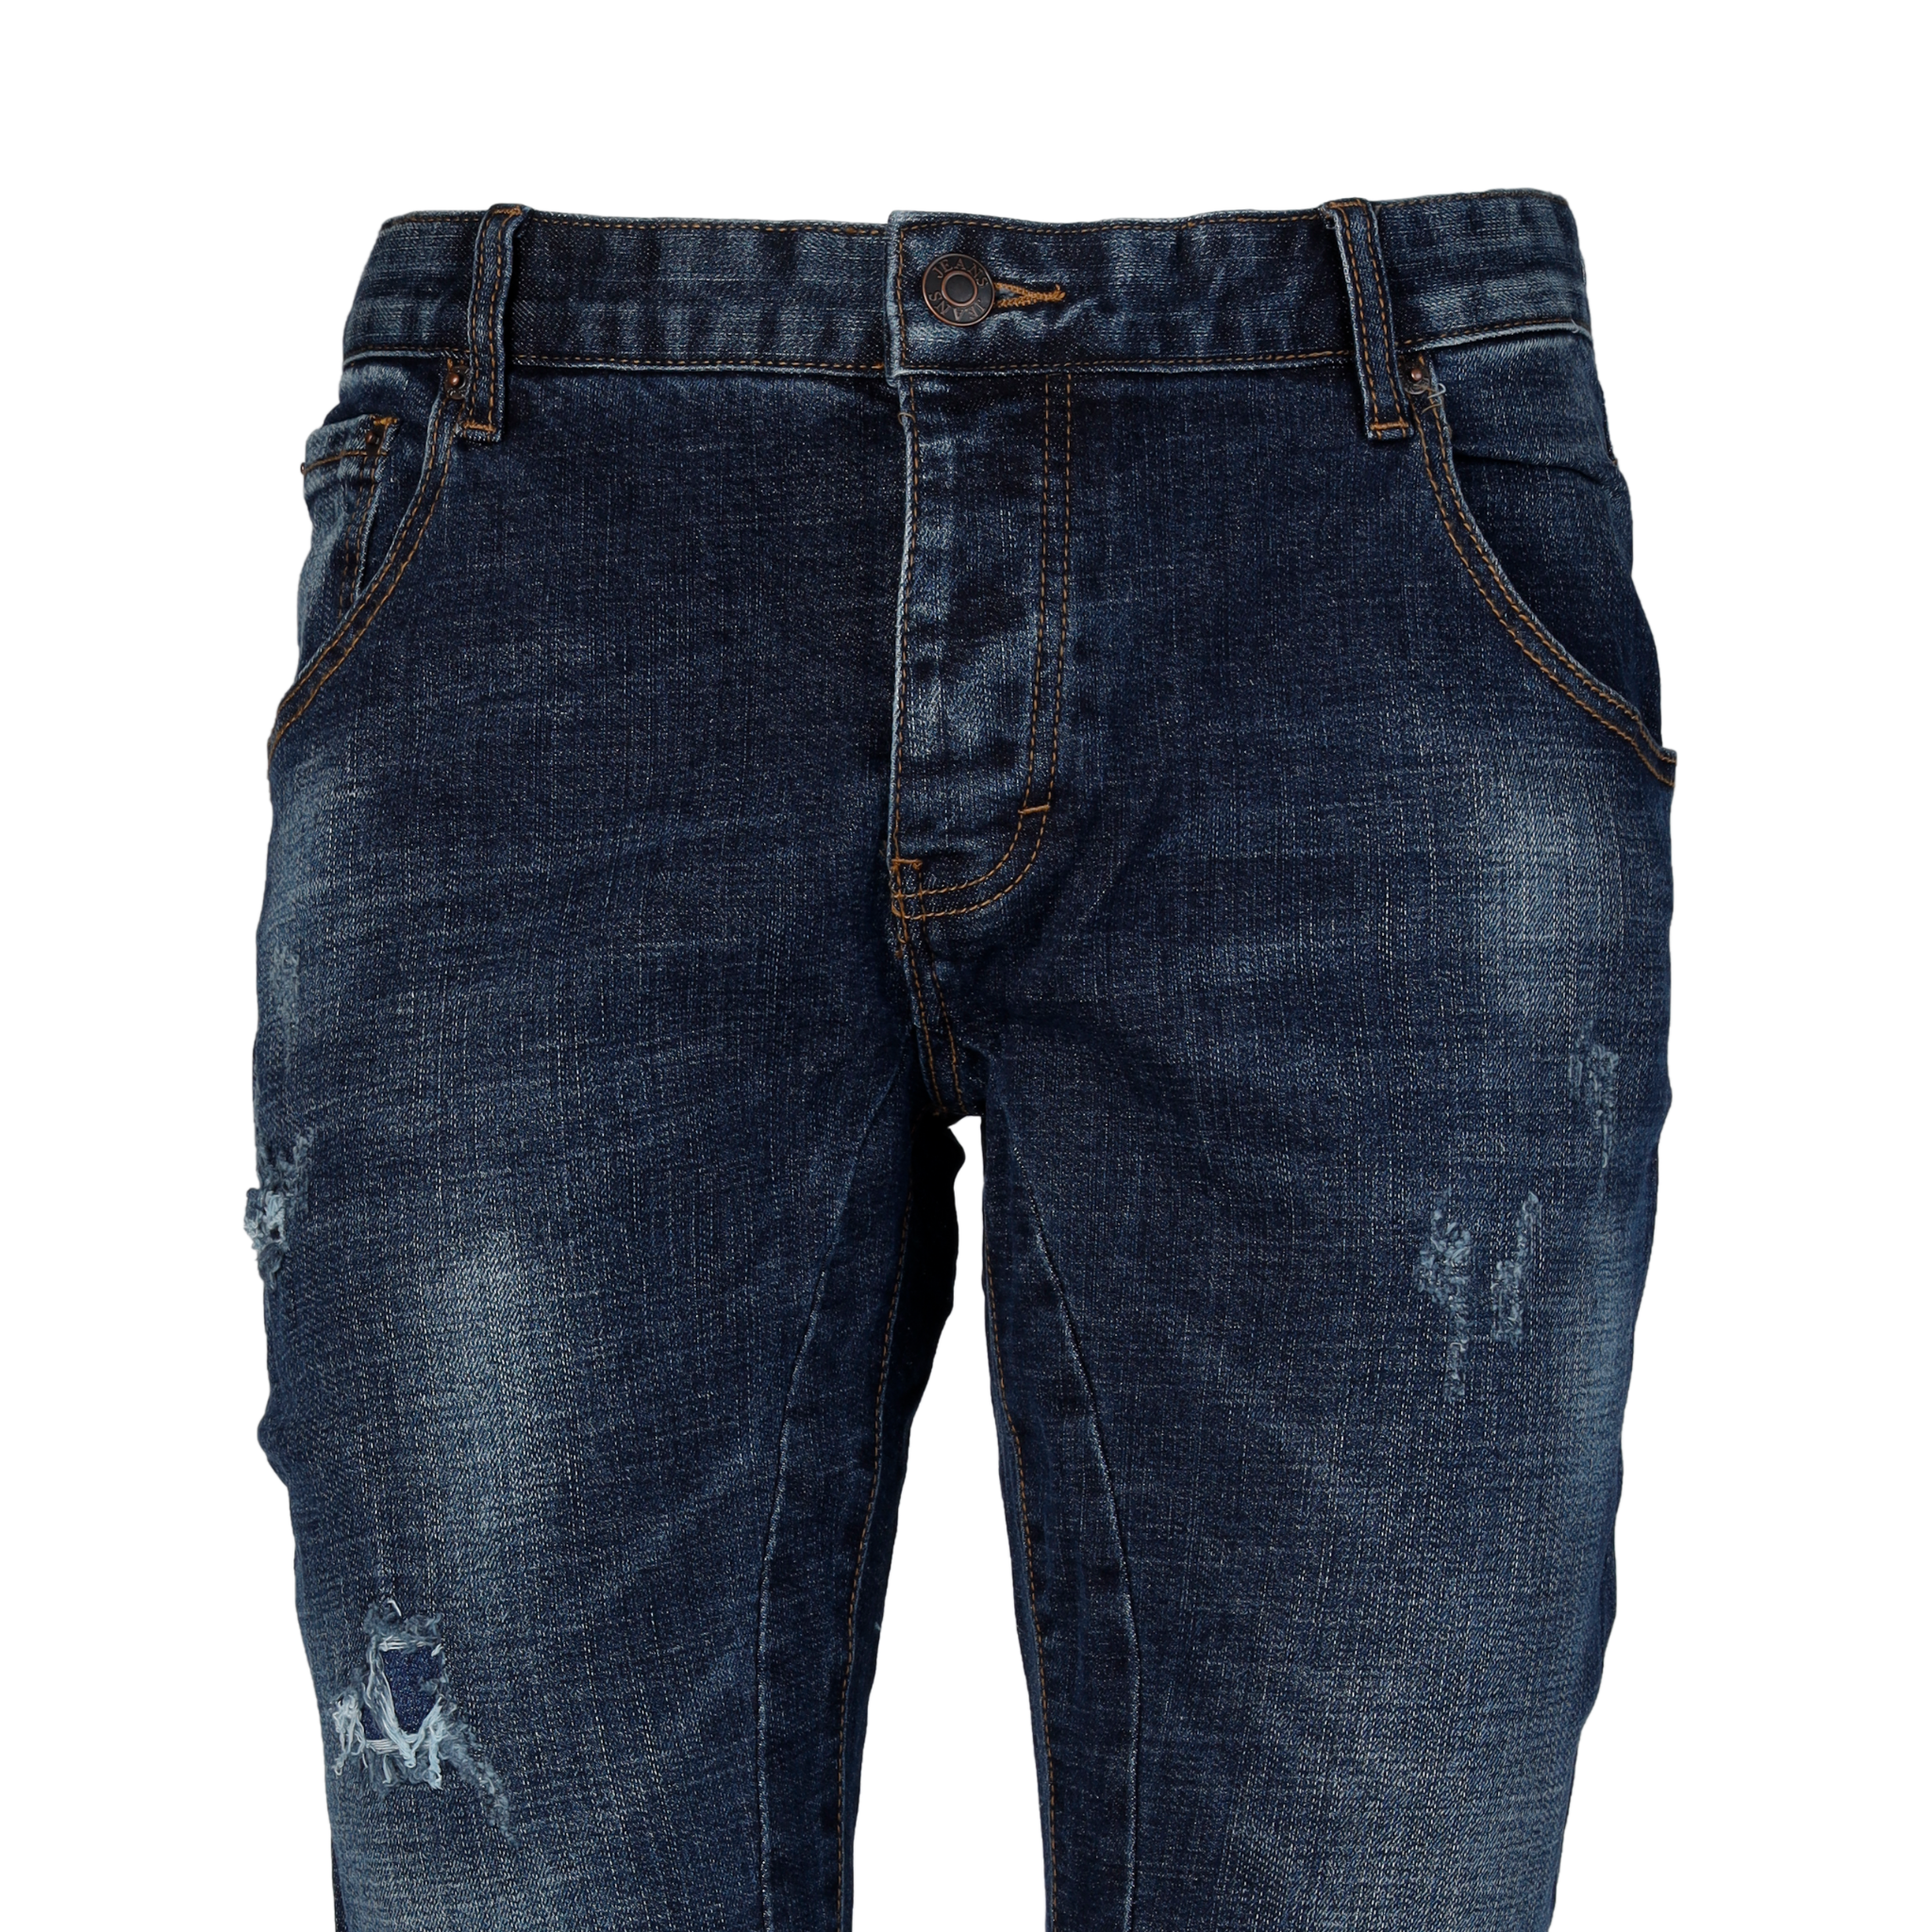 Jeans Uomo Elasticizzato Pantaloni Slim Fit Casual Cinque tasche Skinny Esprez